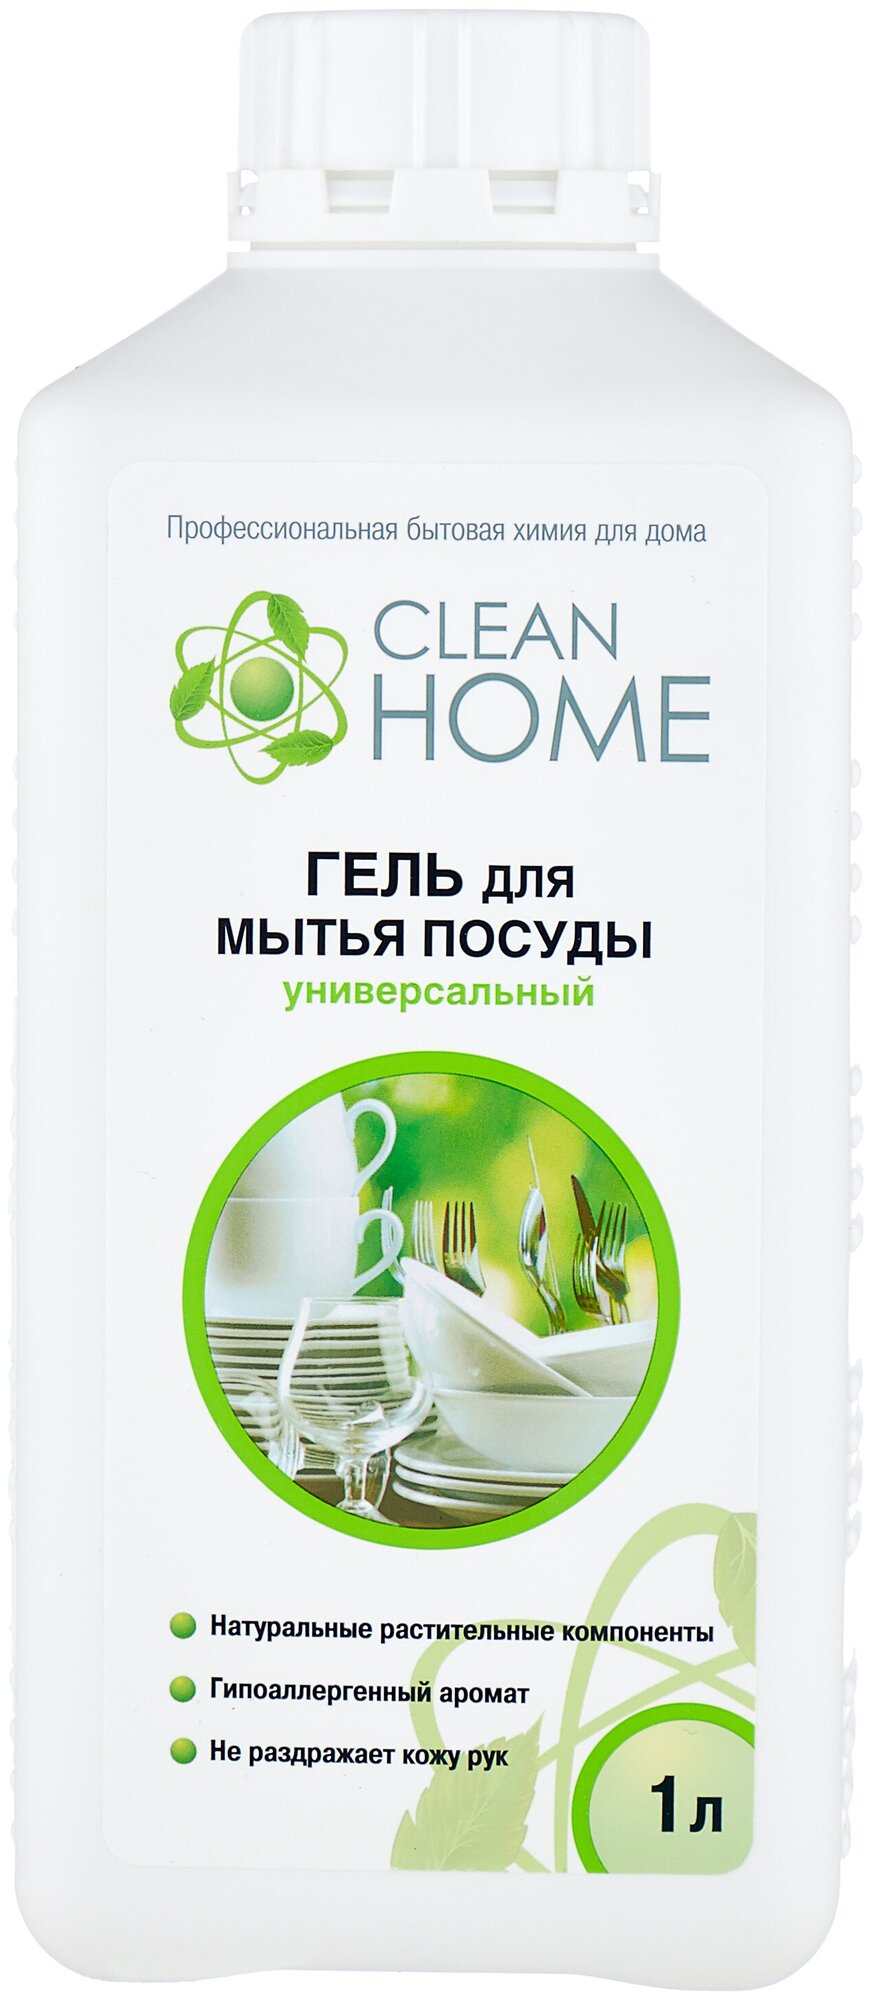     Clean home ( ), 1  4063027